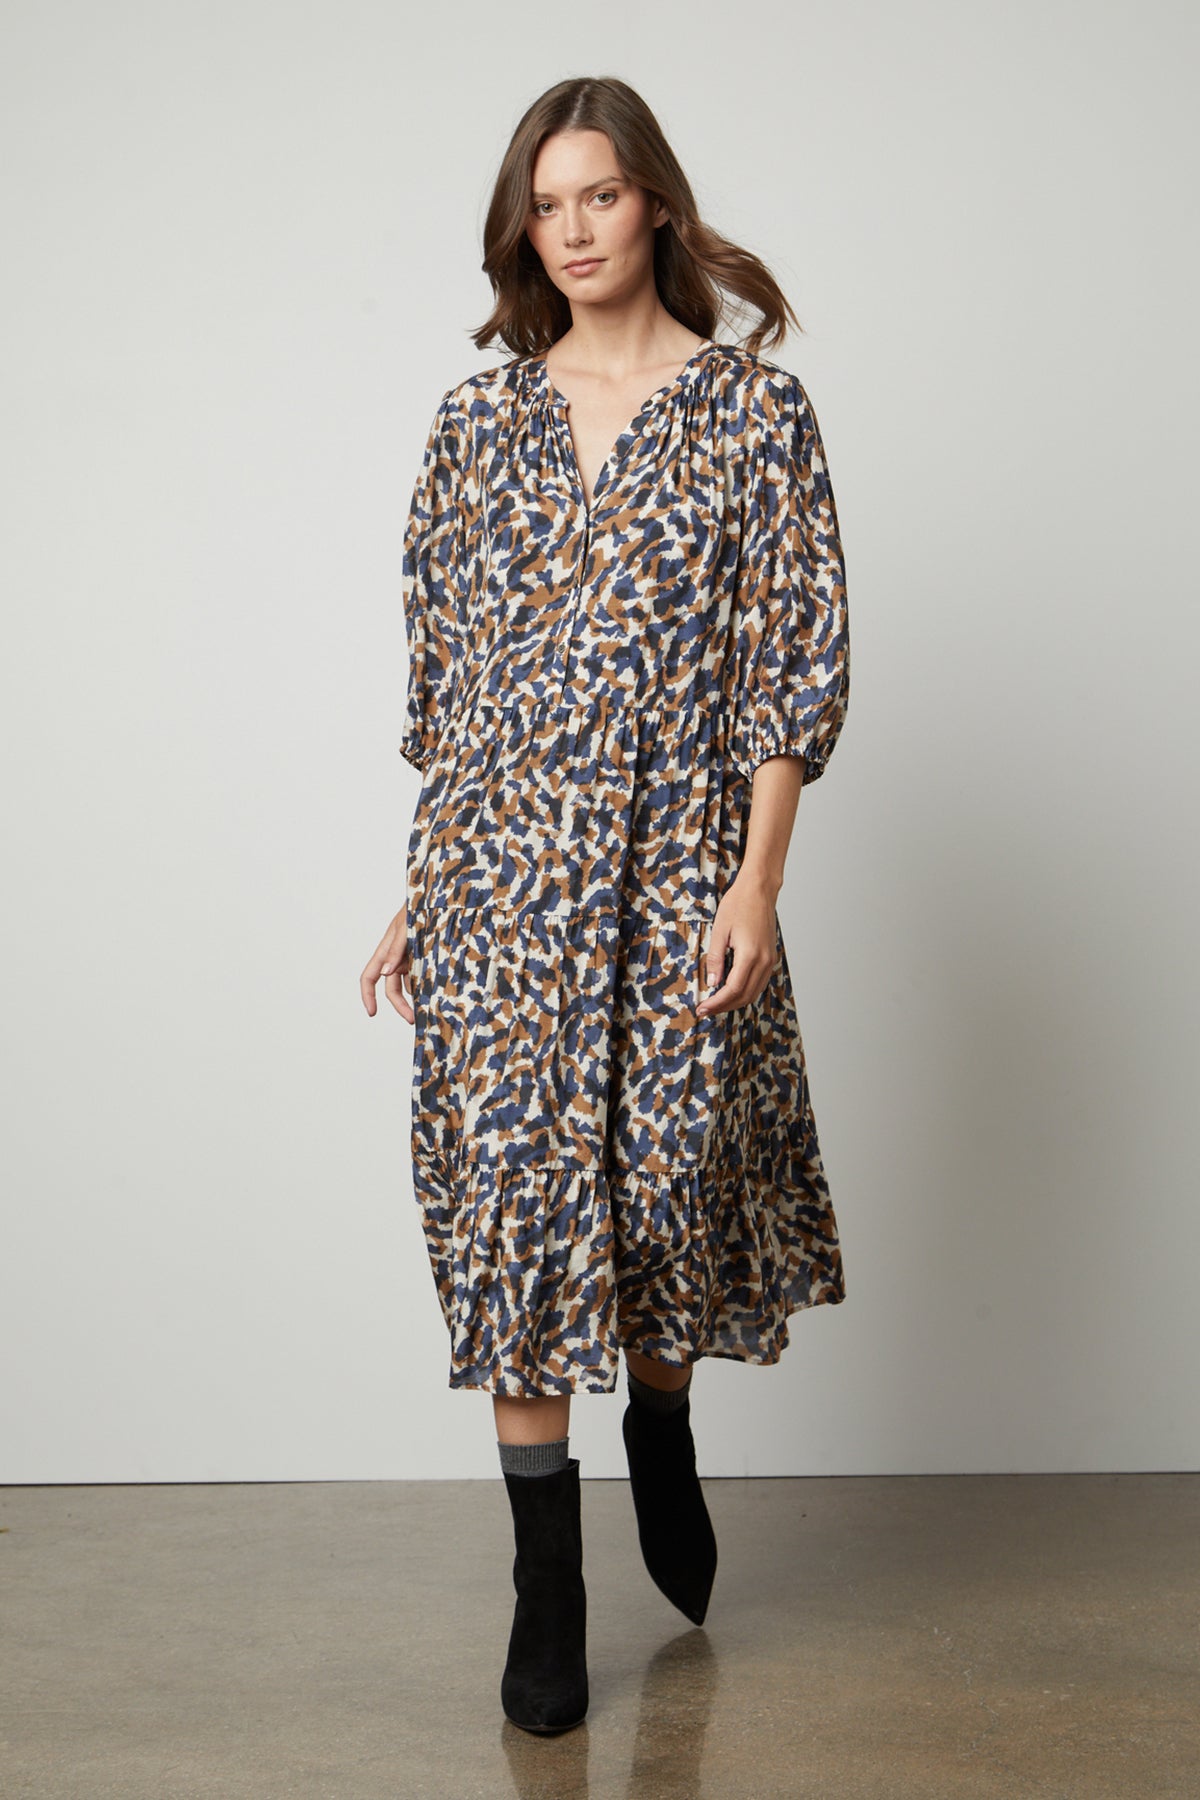 The model is wearing a Velvet by Graham & Spencer OTTILIE PRINTED BOHO DRESS.-26914793652417